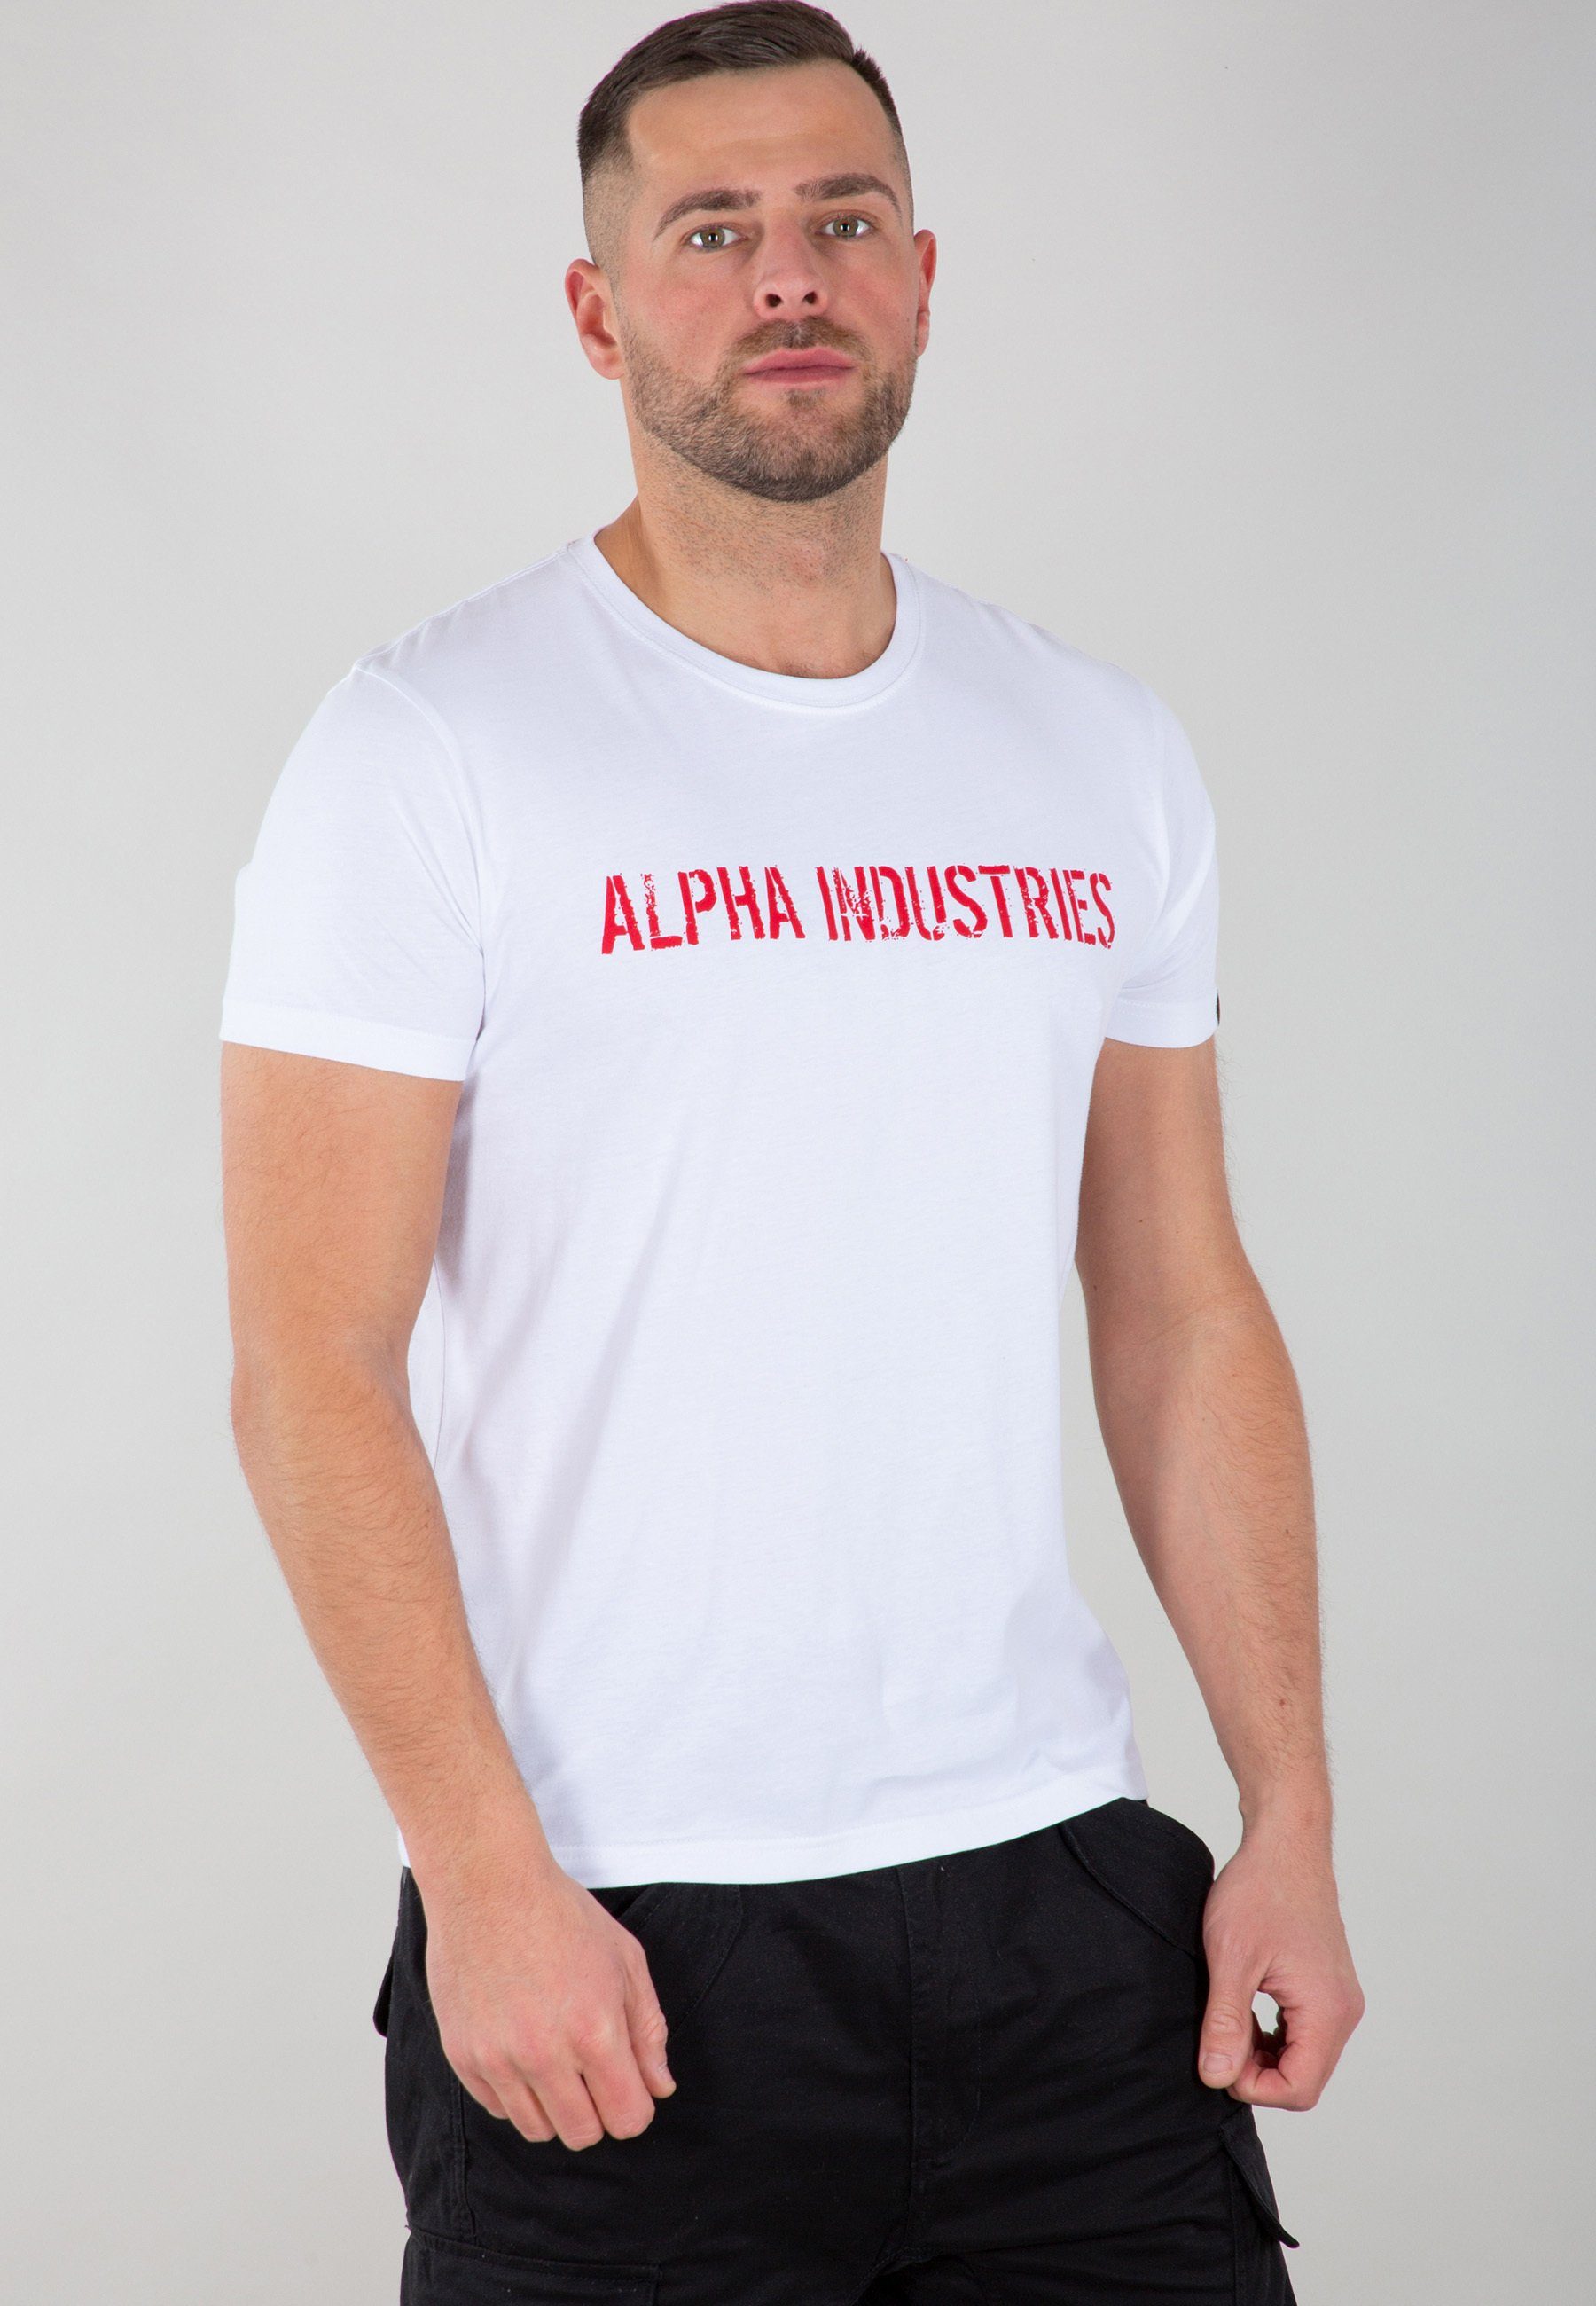 T-Shirts Alpha Siebdruck Moto RBF Brust auf Alpha Men Industries T-Shirt Alpha der - T, Industries Industries